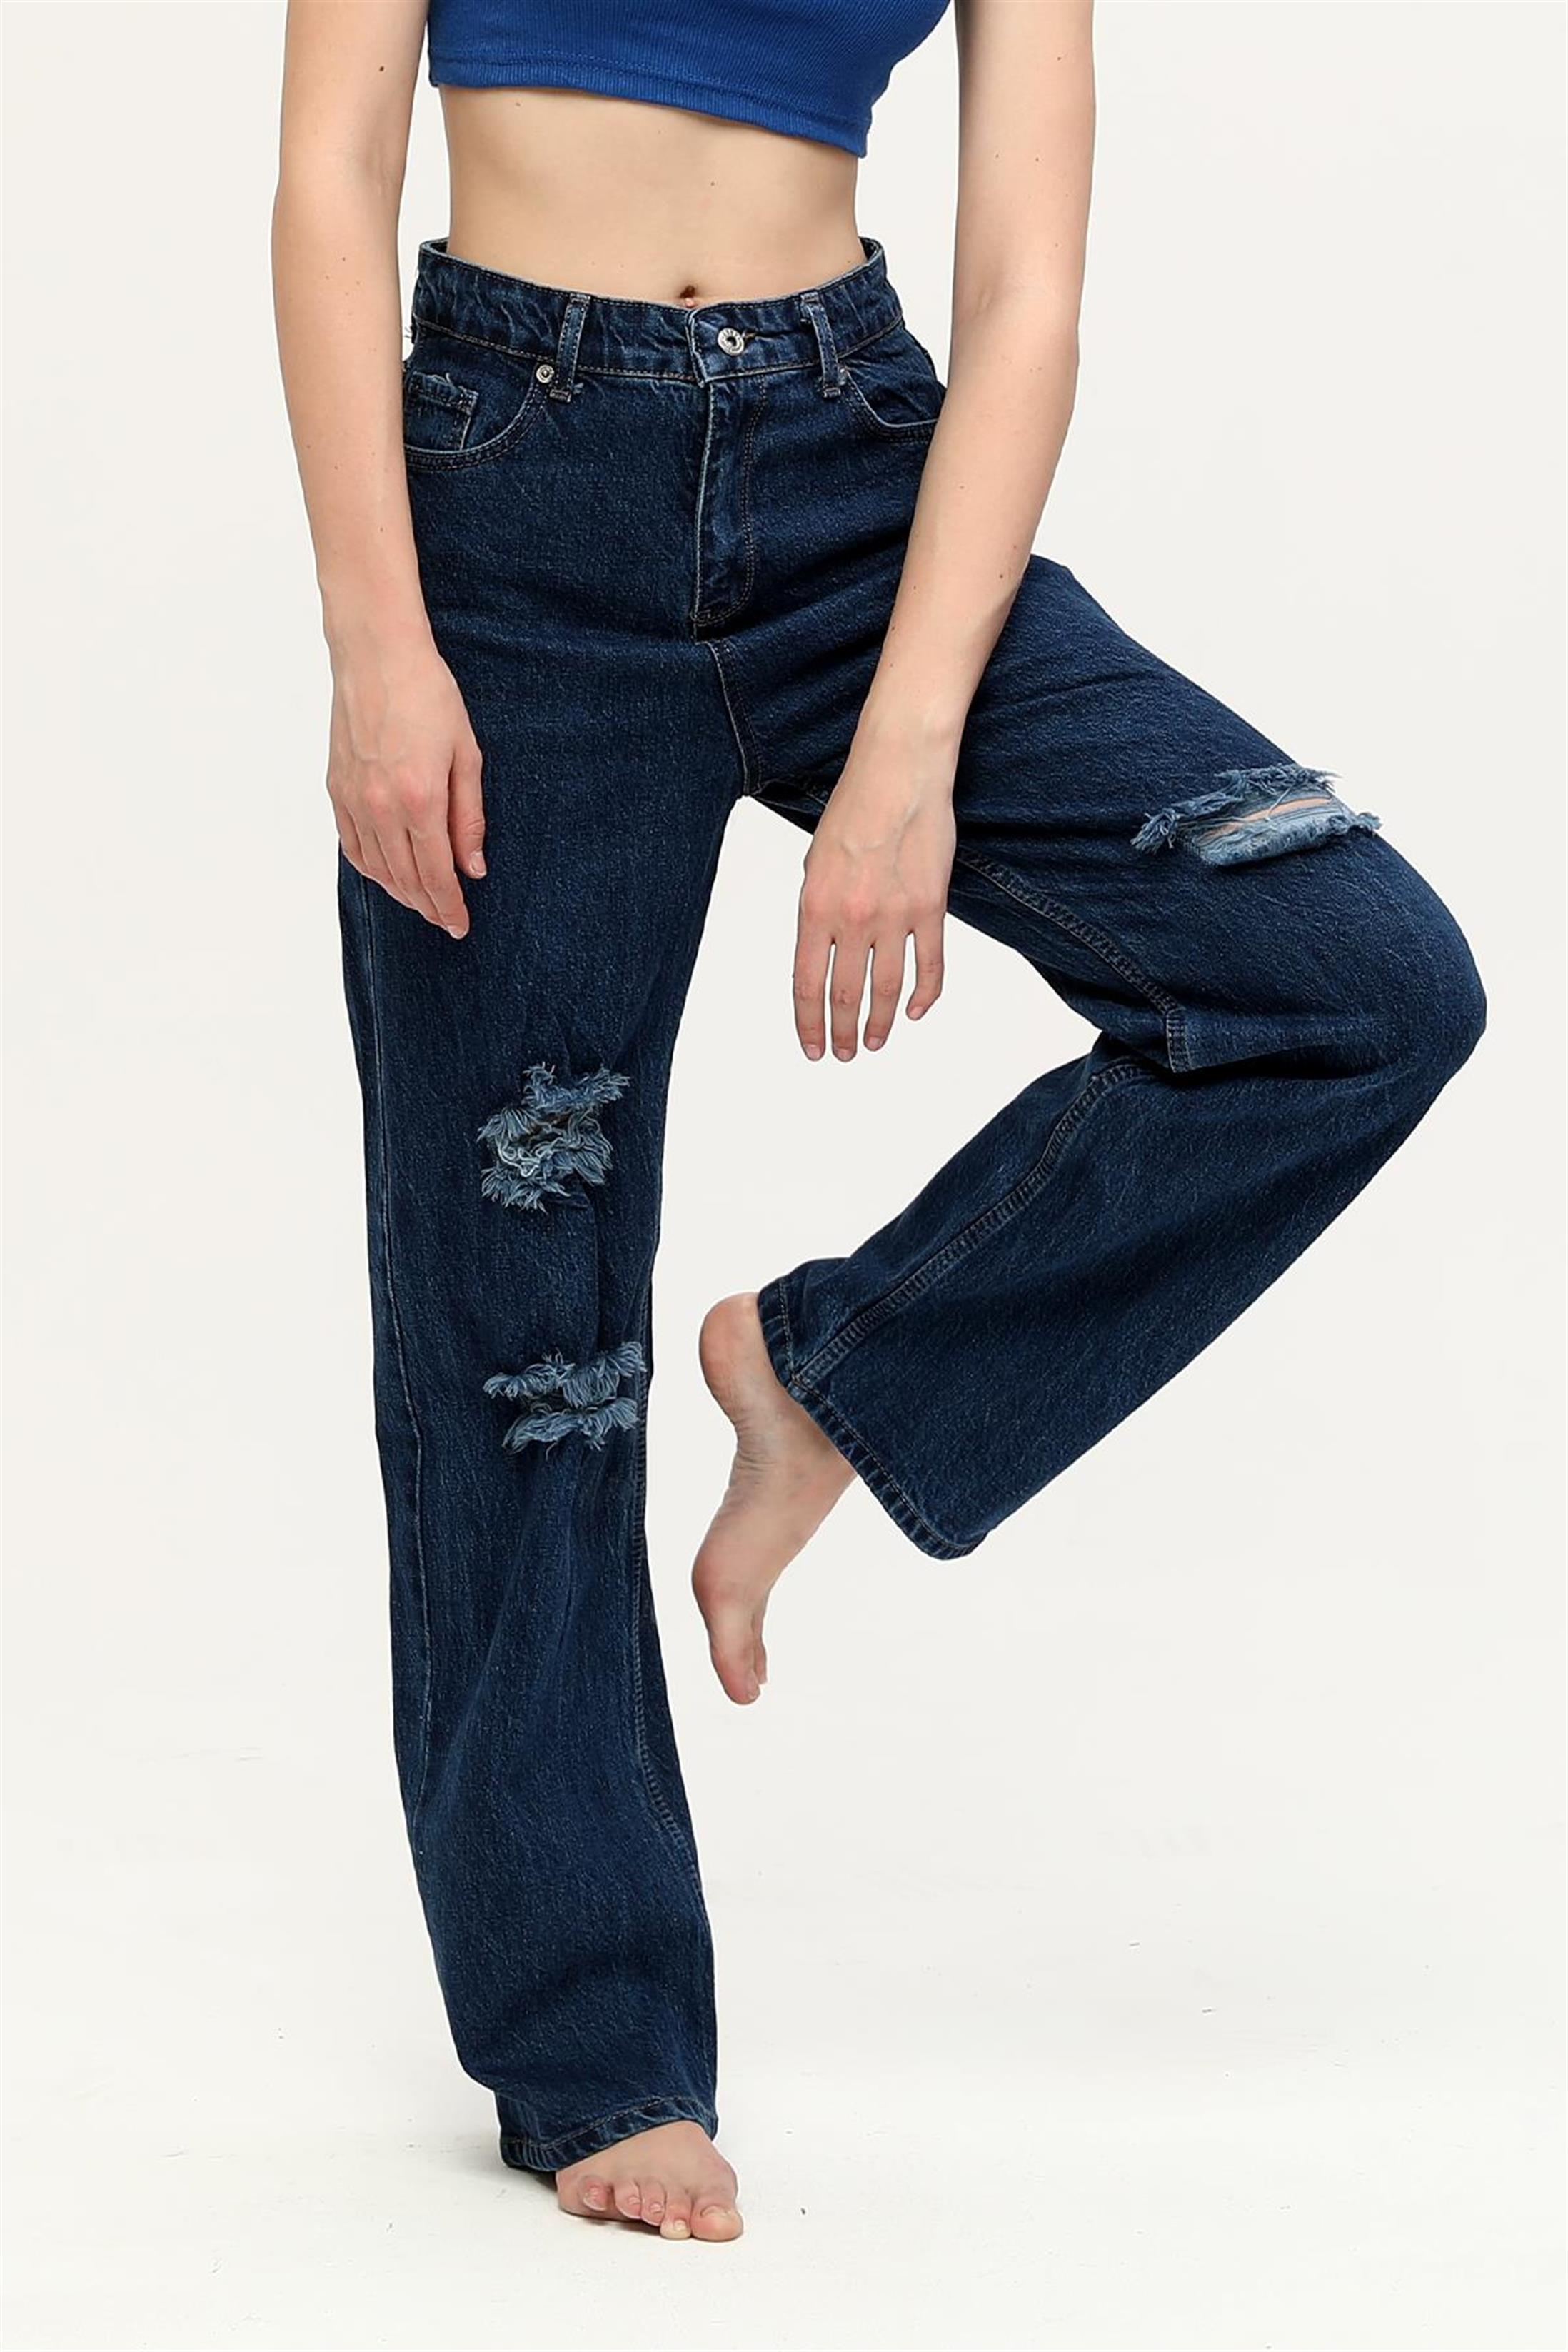 Kadın Yüksek Bel Salaş Yırtık Denim Jean Pantolon - Zincir Moda